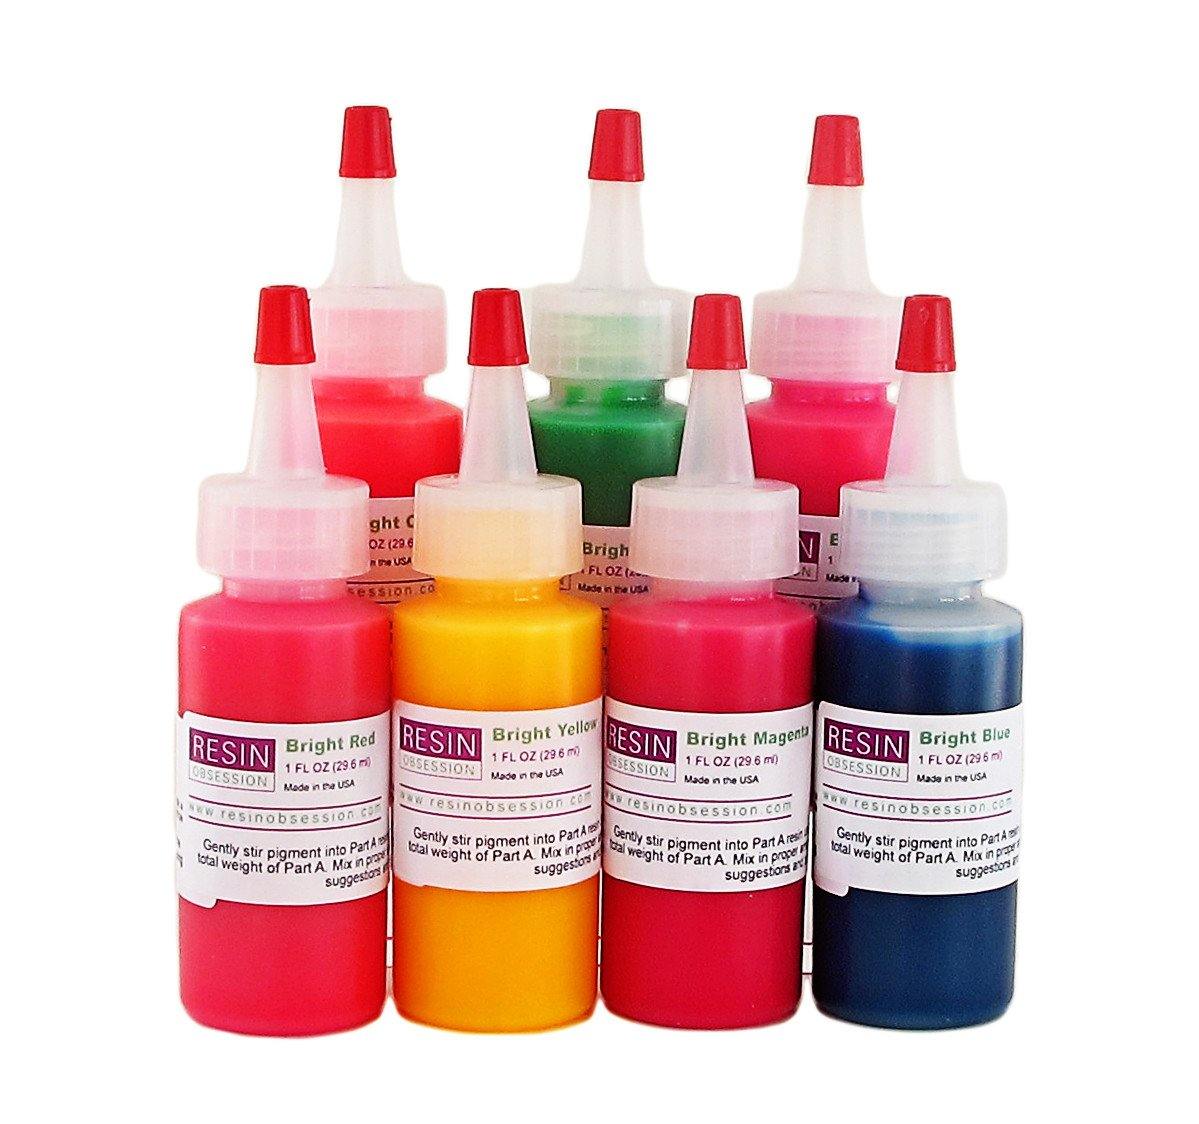 colored epoxy resin